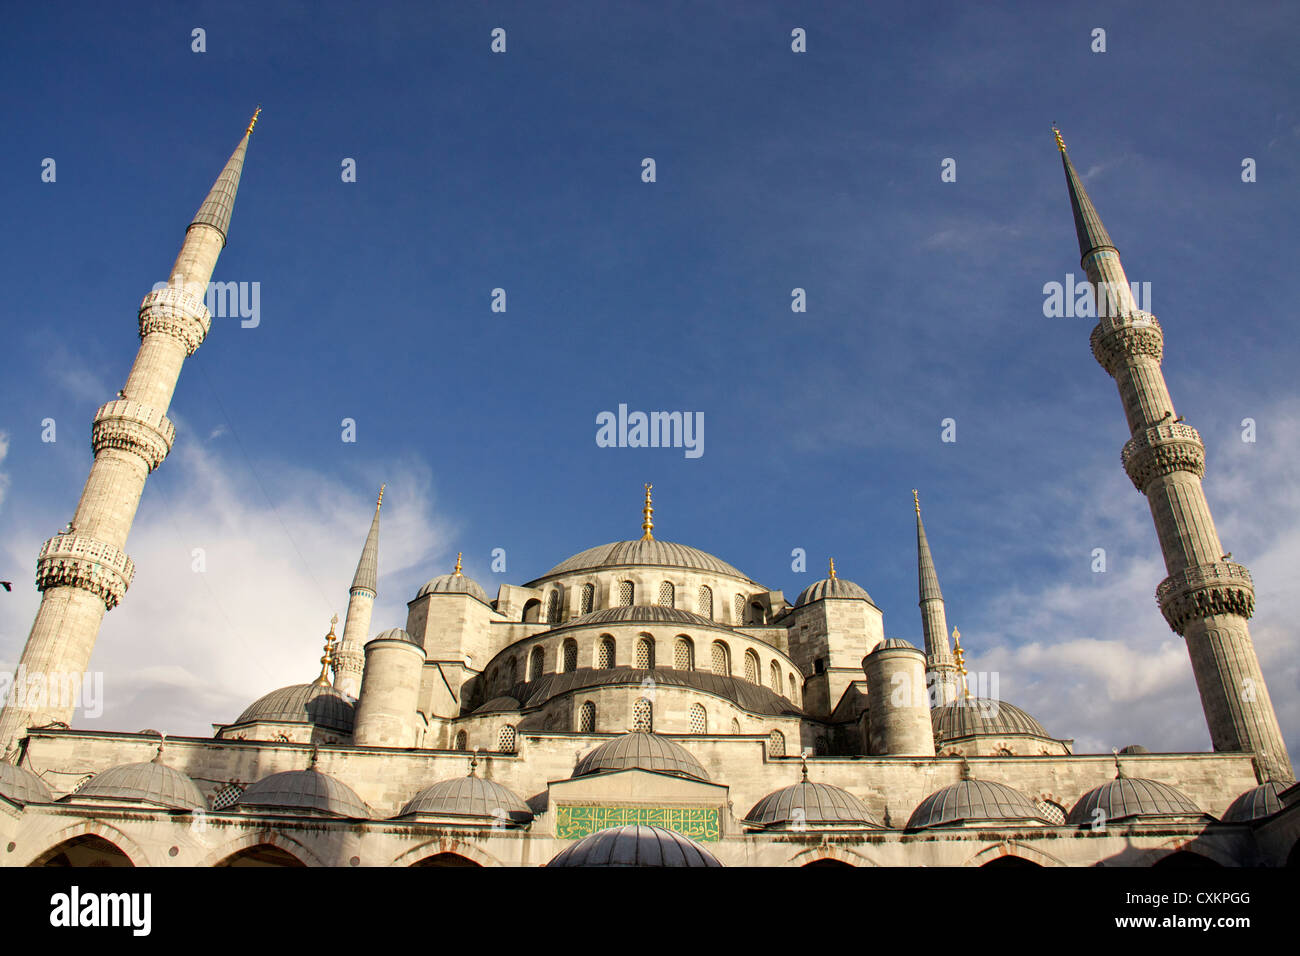 schönen Mosaik innen Kunstwerke im Inneren der blauen Moschee oder Sultan-Ahmet-Moschee, Istanbul, Türkei Stockfoto